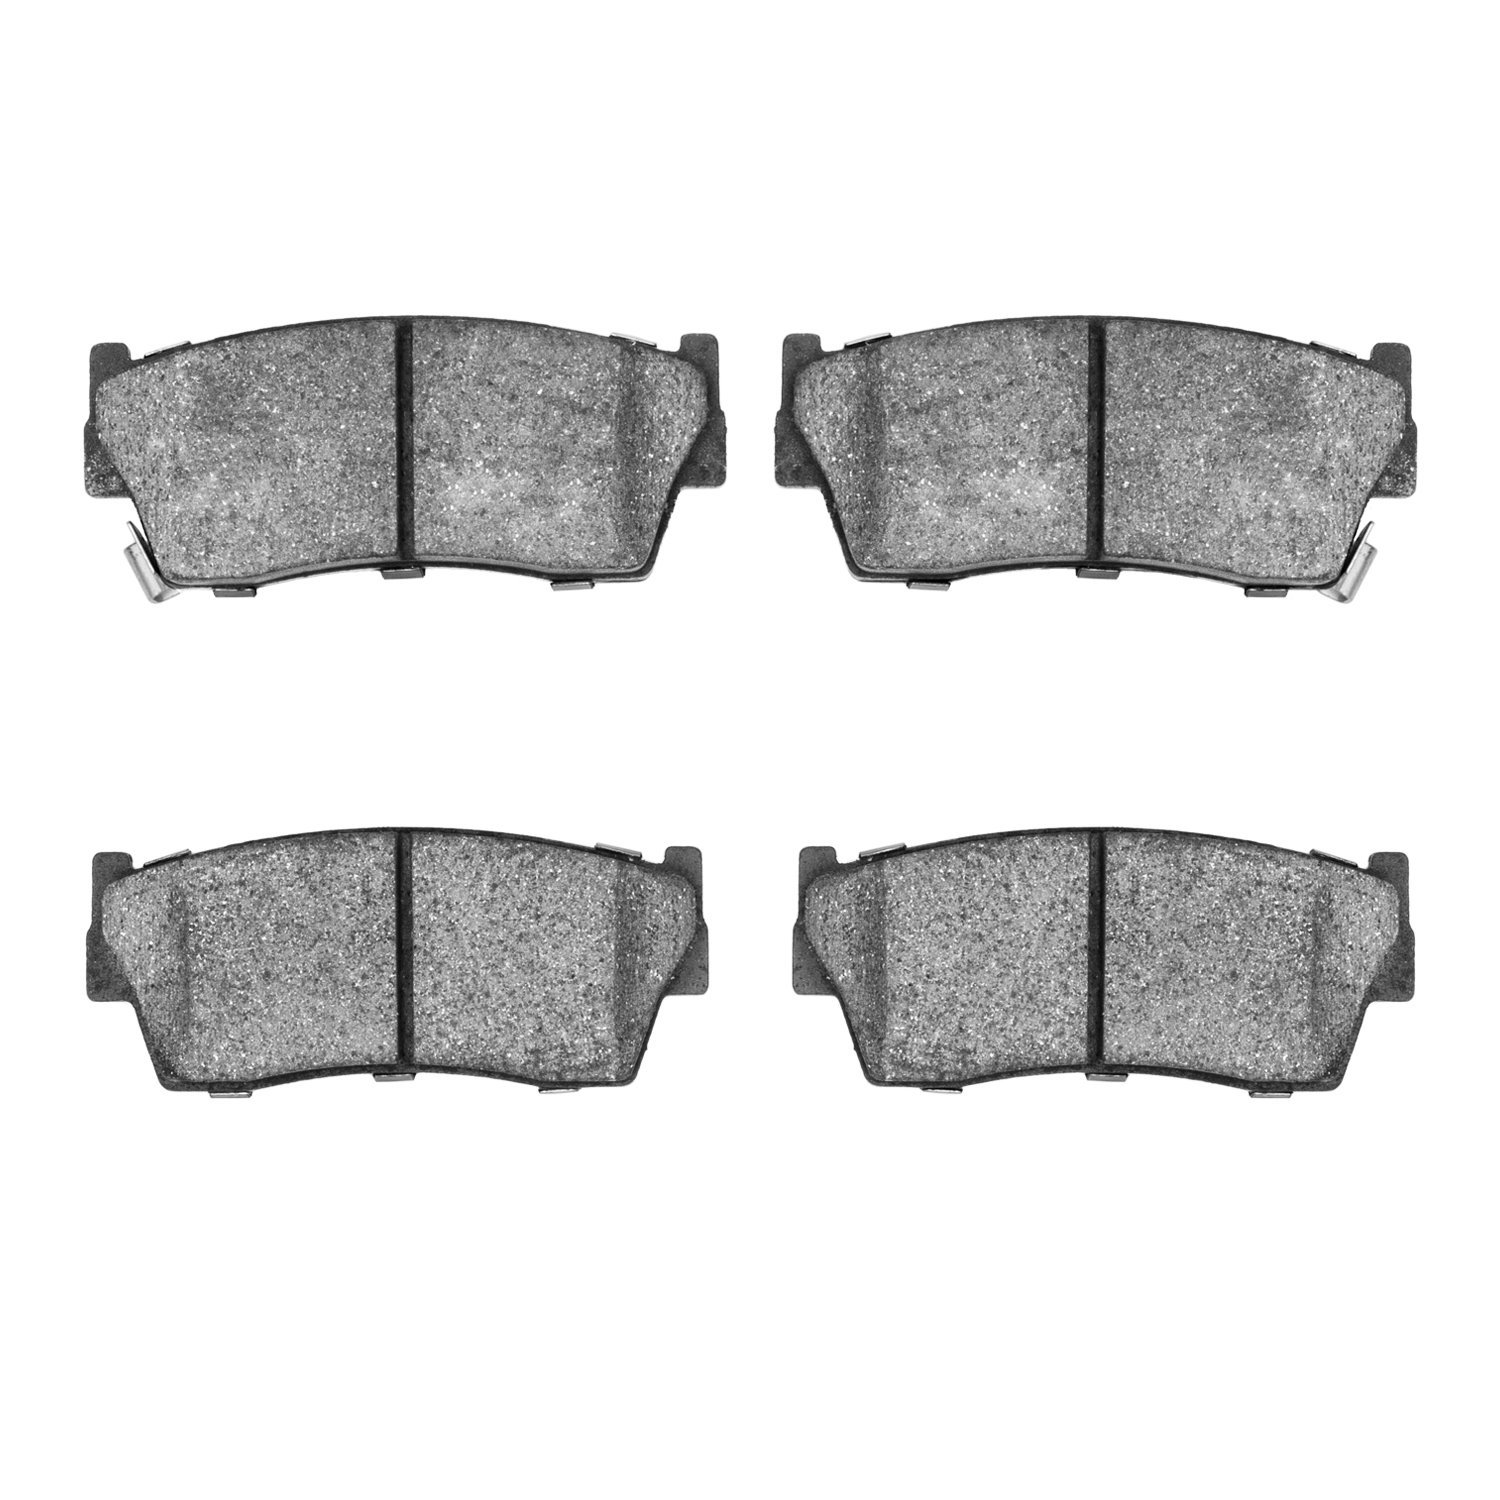 Ceramic Brake Pads, 1989-1998 Fits Multiple Makes/Models, Position: Front